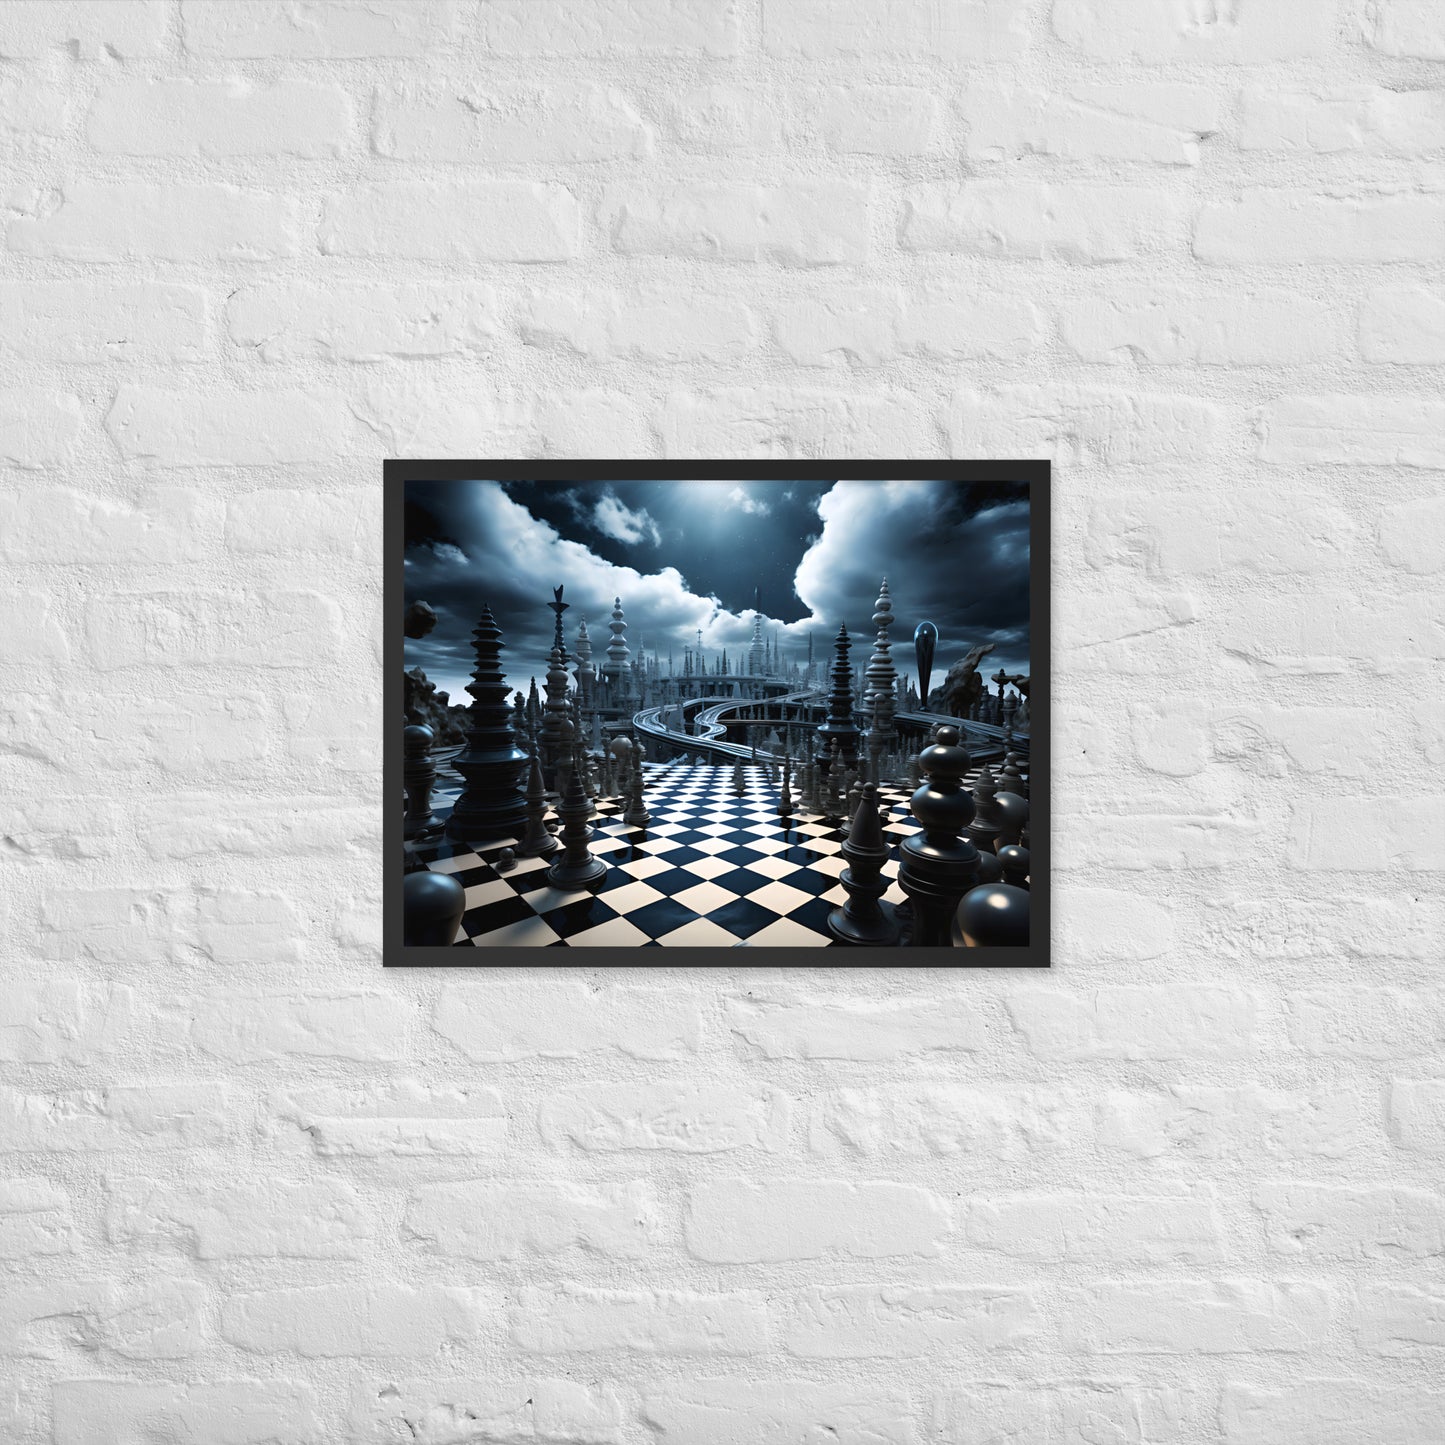 En passant; AI Chess, Framed Poster Print 18x24